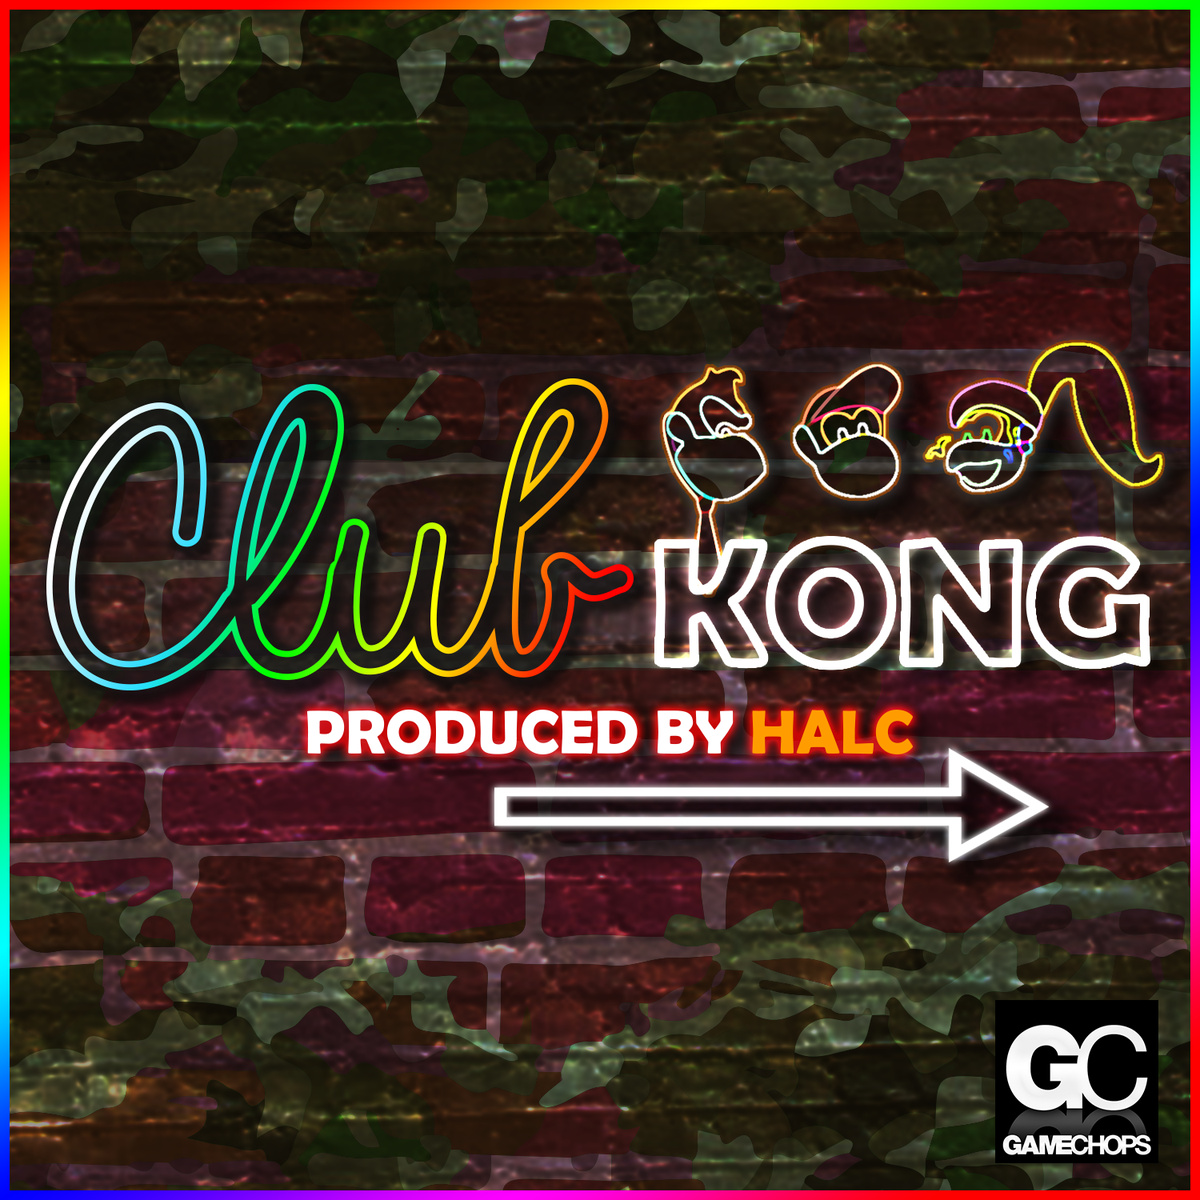 Club kong